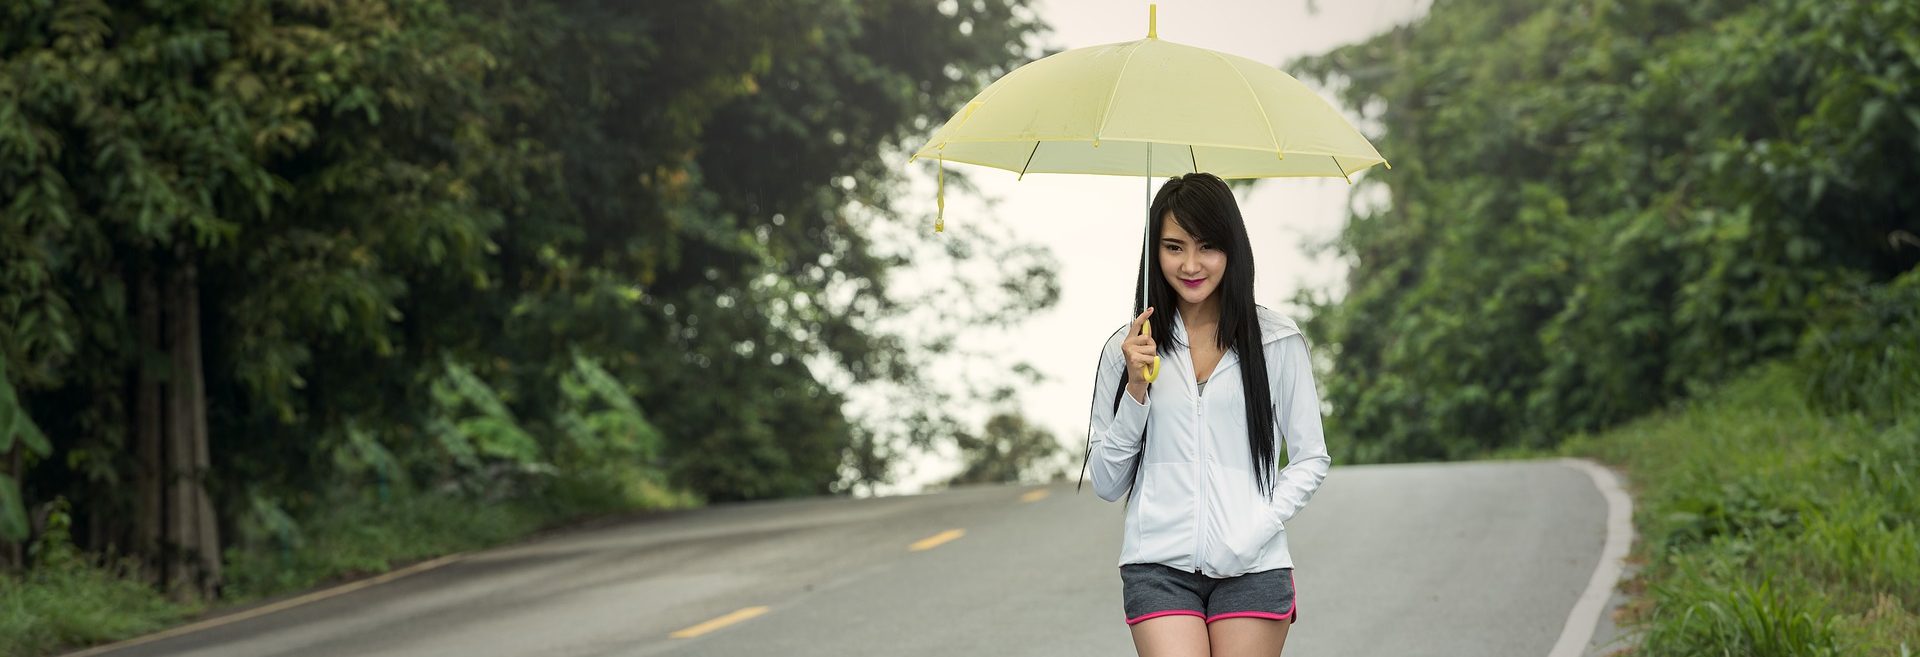 Как выбрать зонт, и не ошибиться